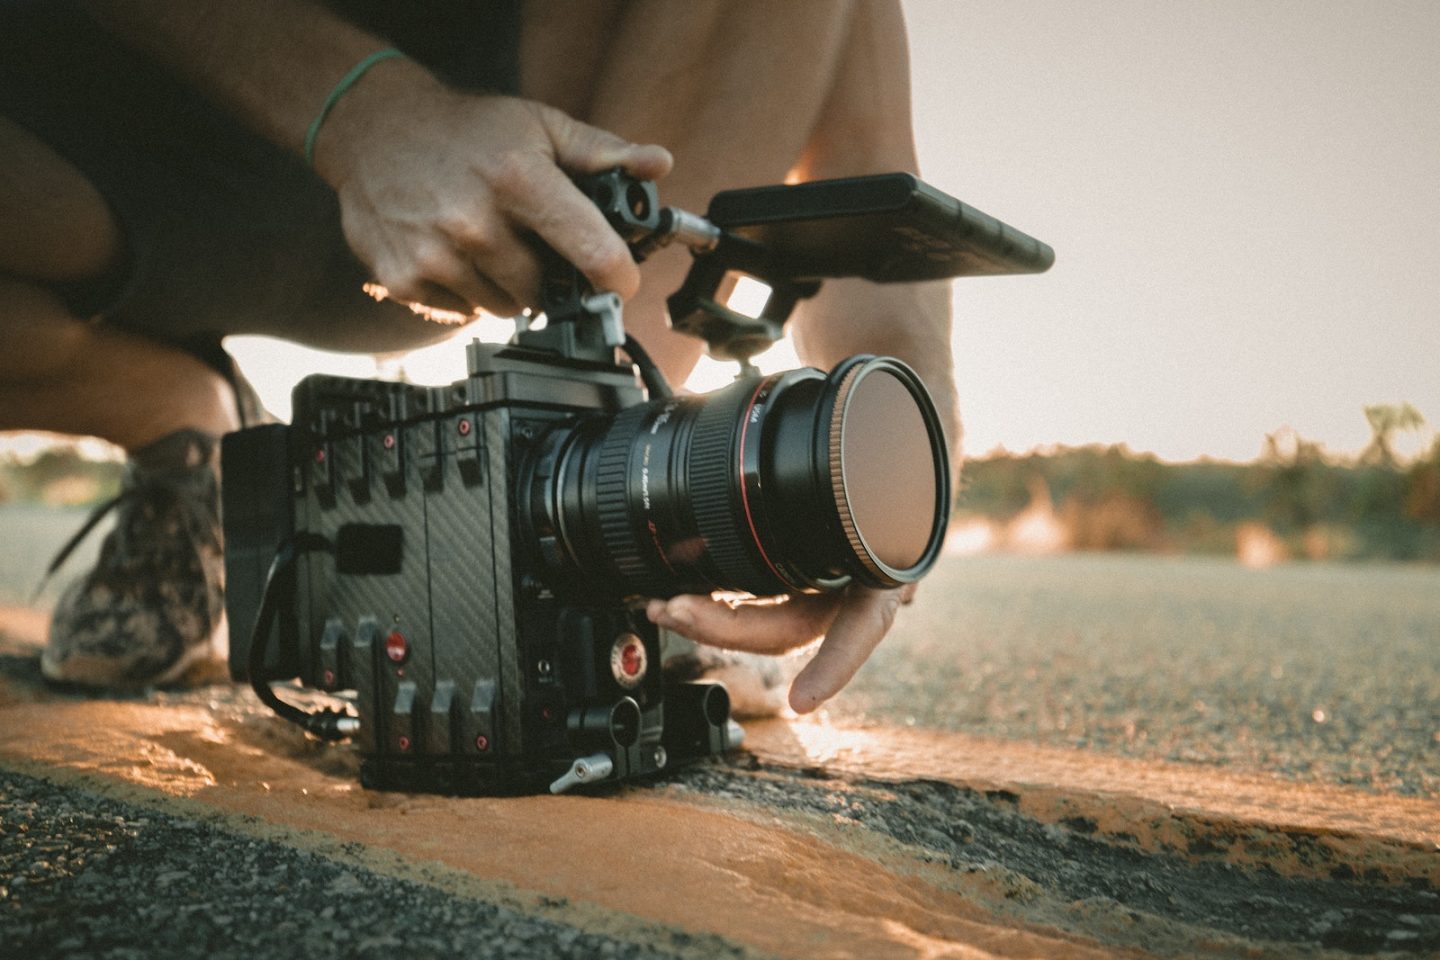 Закон передбачає державну субсидію для кінематографії в обсязі до 100% від кошторису кіно